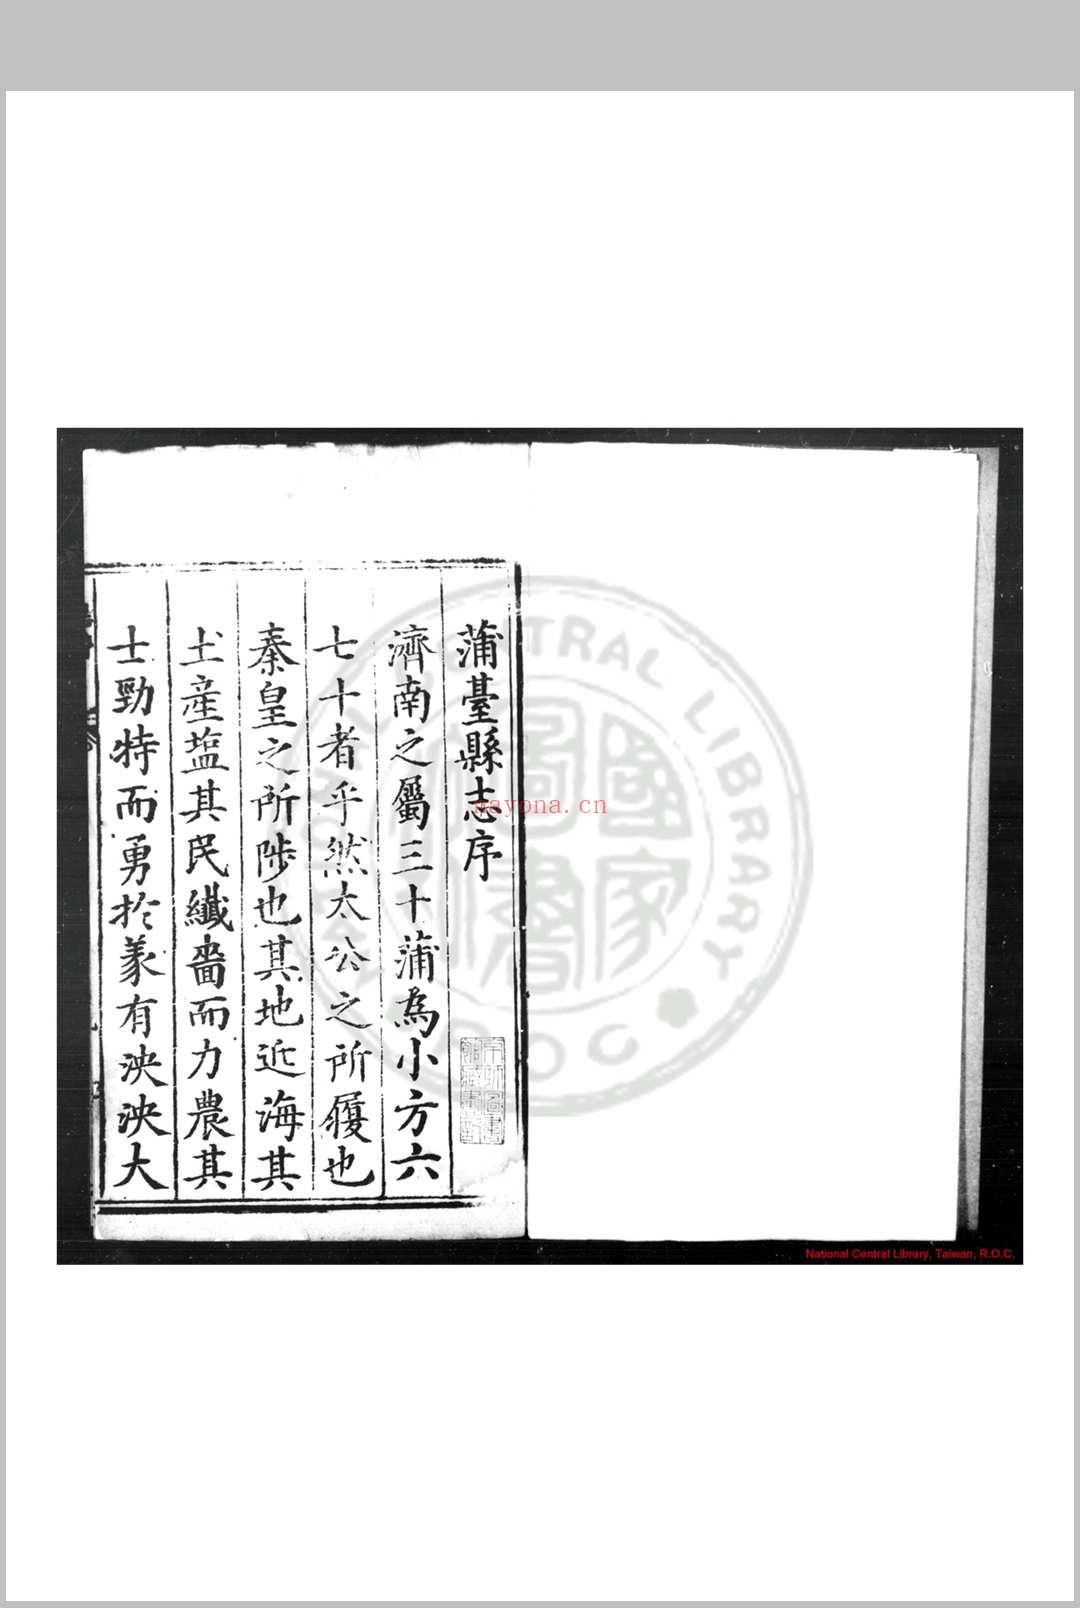 蒲台志 (明)王尔彦等纂修 明万历辛卯(十九年, 1591)刊本